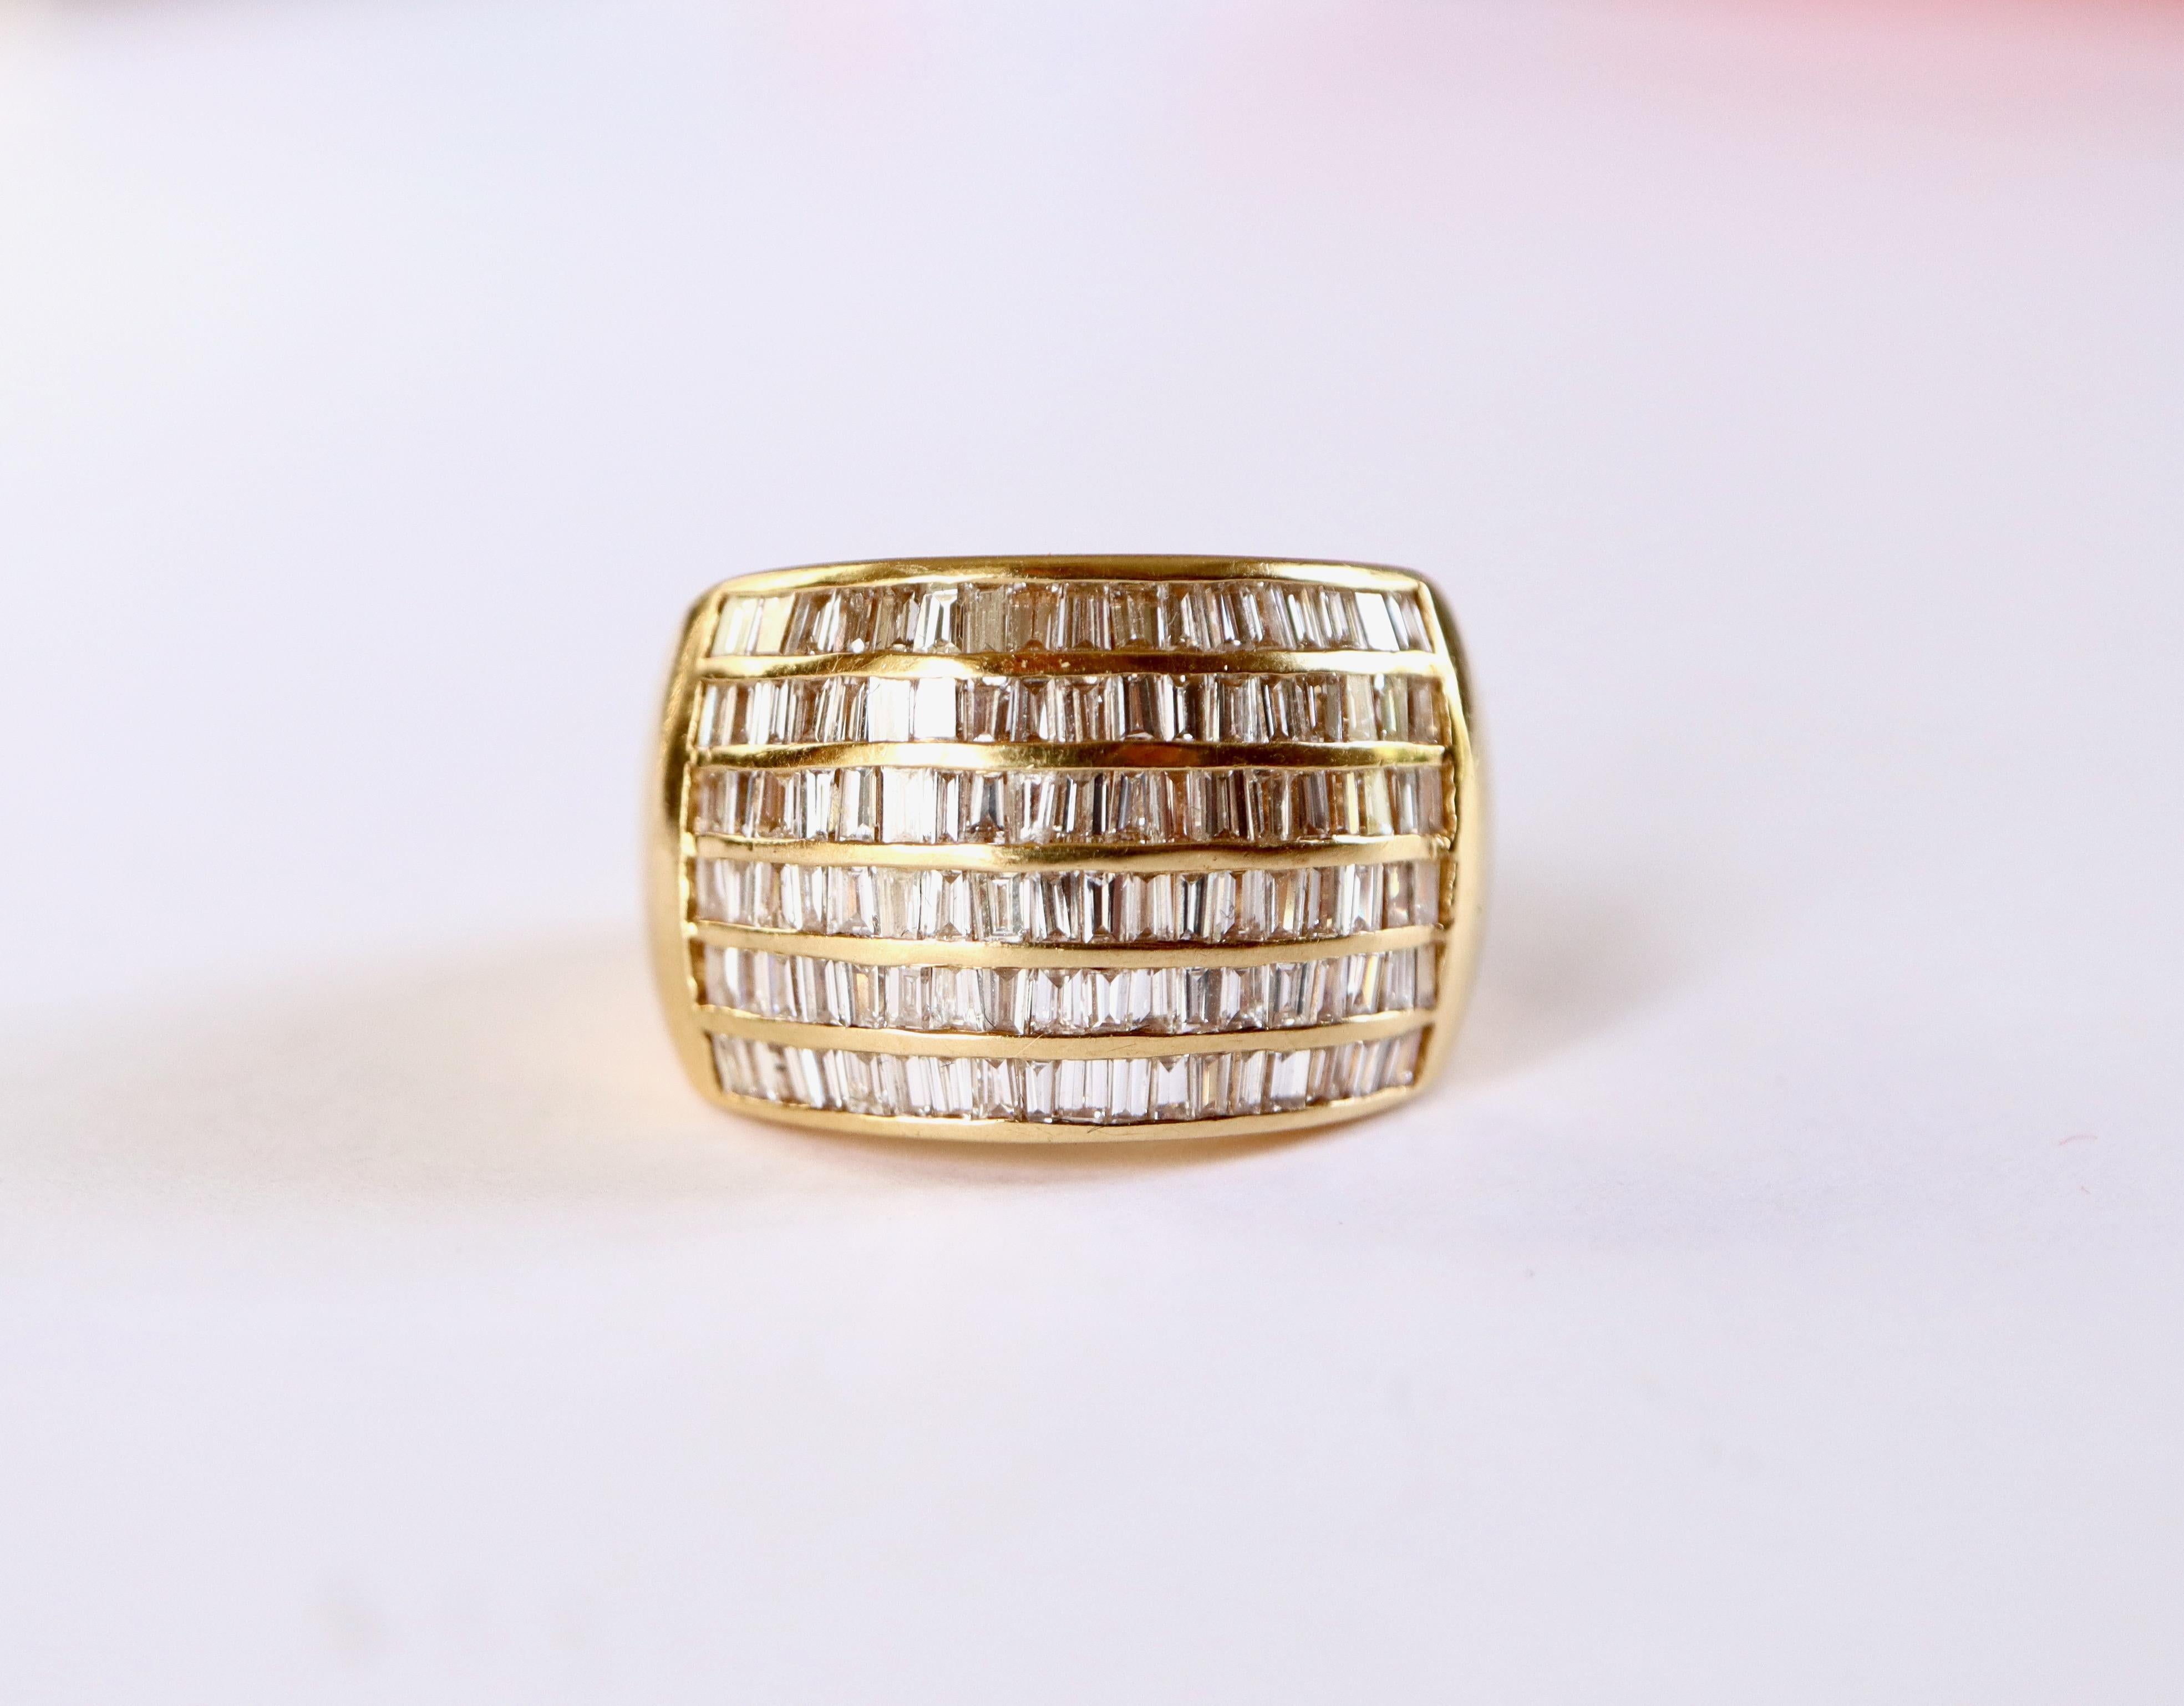 Ring aus 18 Karat Gelbgold und Baguette-Diamanten. Der Ring besteht aus 6 Reihen von Baguette-Diamanten auf der Vorderseite des Rings mit einem Gesamtgewicht von 1,5 bis 2 Karat.
Adlerkopfpunze. Französische Arbeit
Durchmesser: 18 mm FR Größe: 55.5